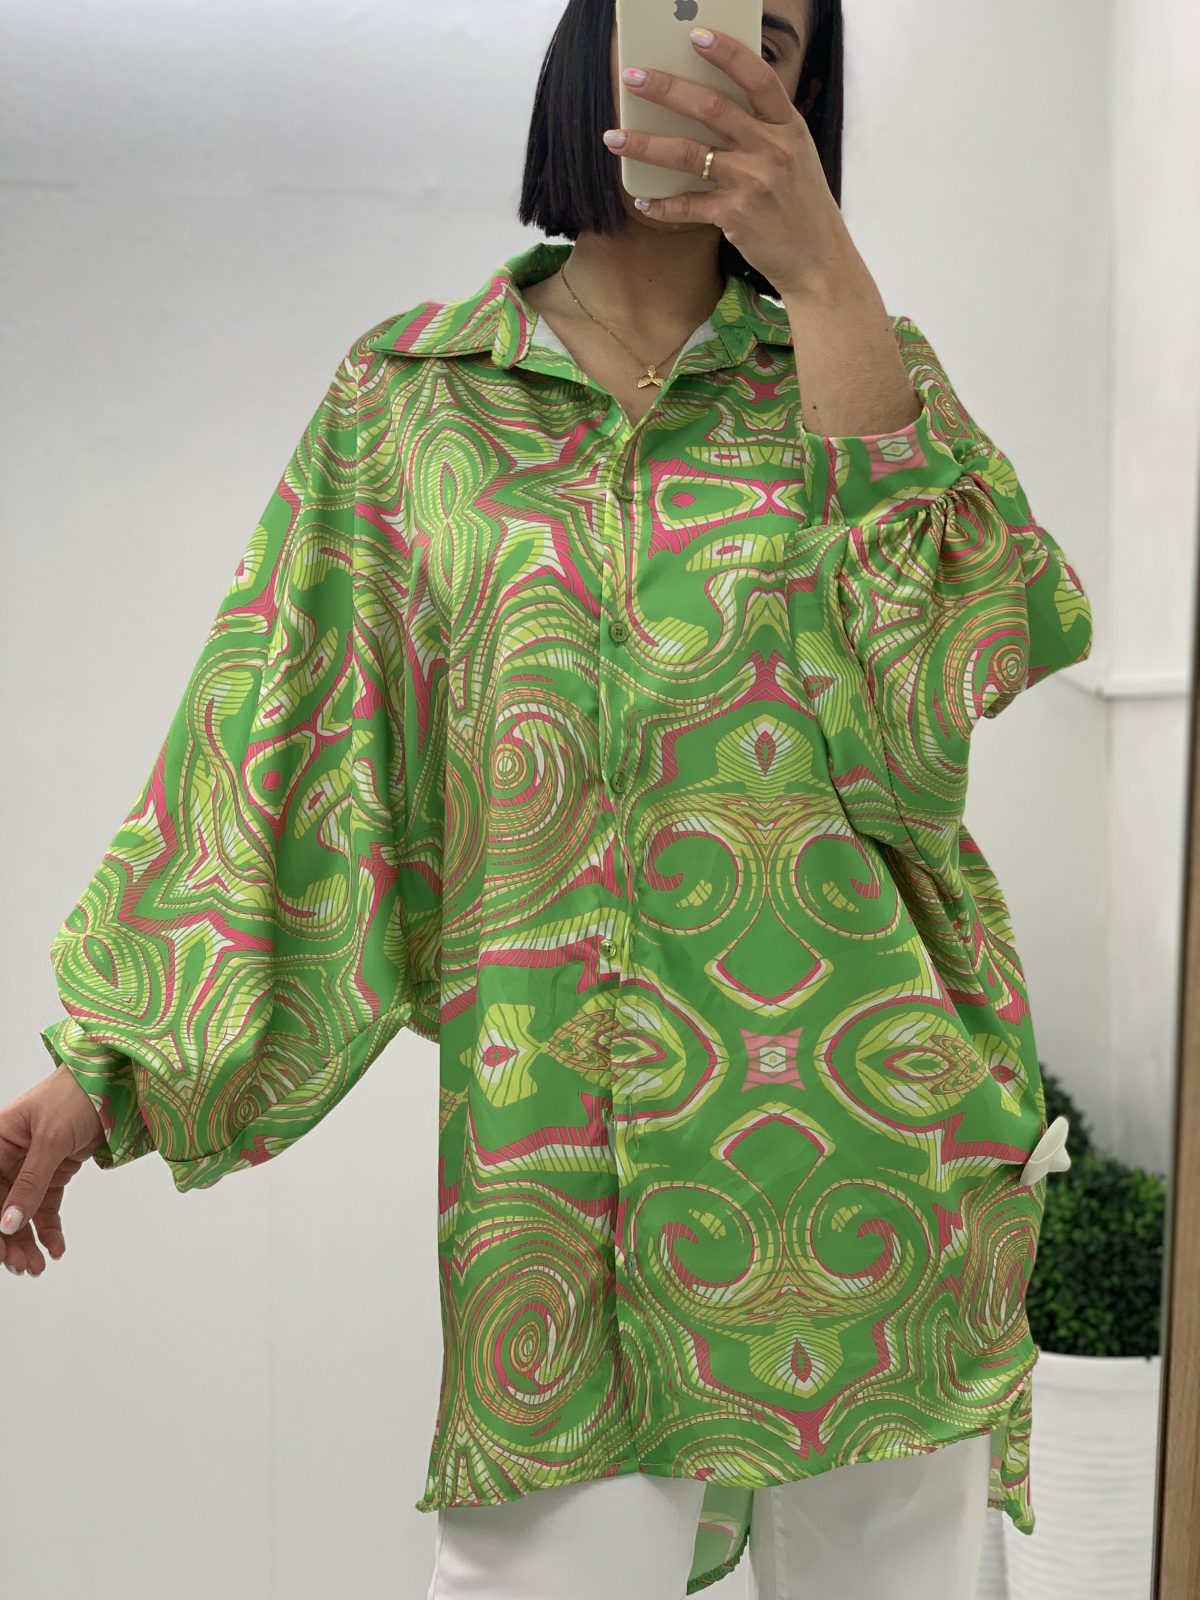 Satin shirts printed in green shades